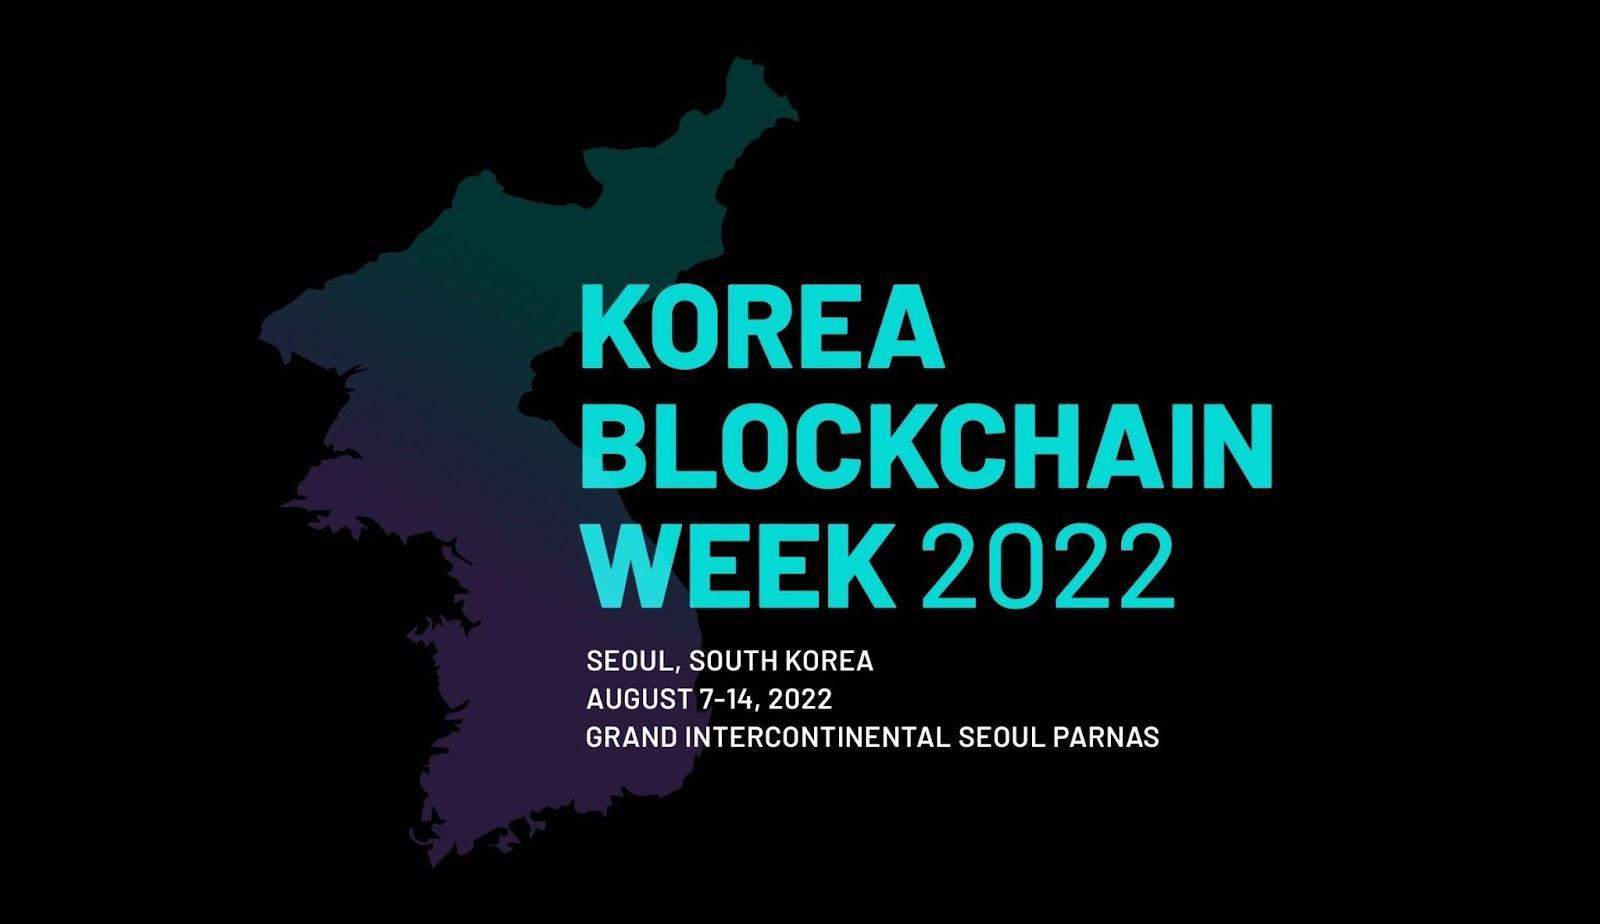 Korea Blockchain Week veranstaltet erstes Live-Event in Seoul nach Covid-Unterbrechung